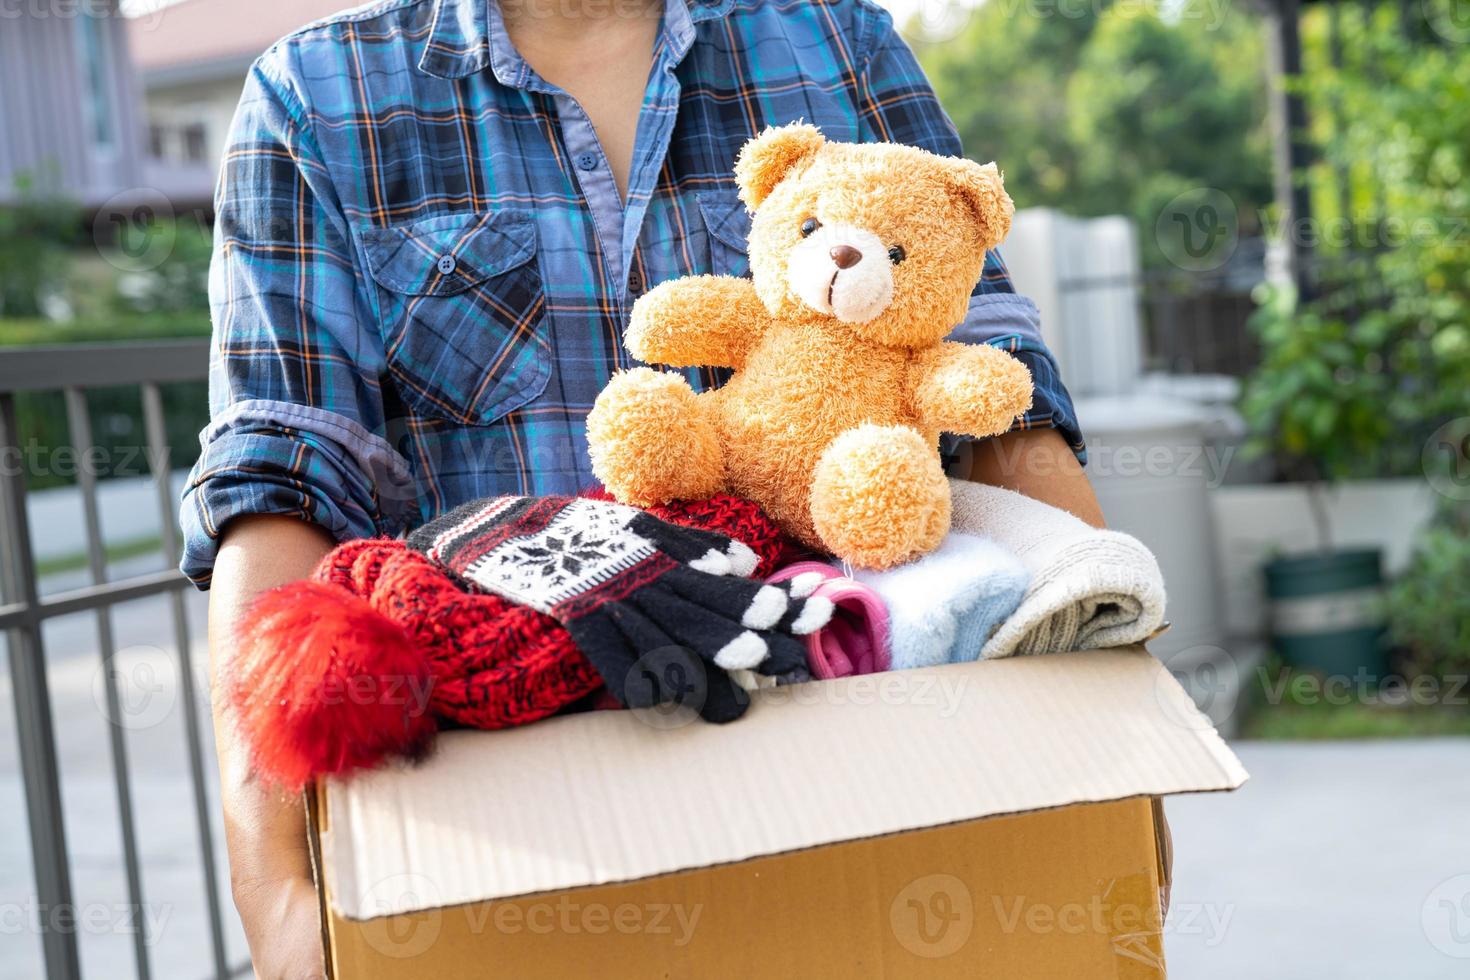 tenant une boîte de dons de vêtements avec des vêtements usagés et une poupée à la maison pour soutenir l'aide aux pauvres dans le monde. photo